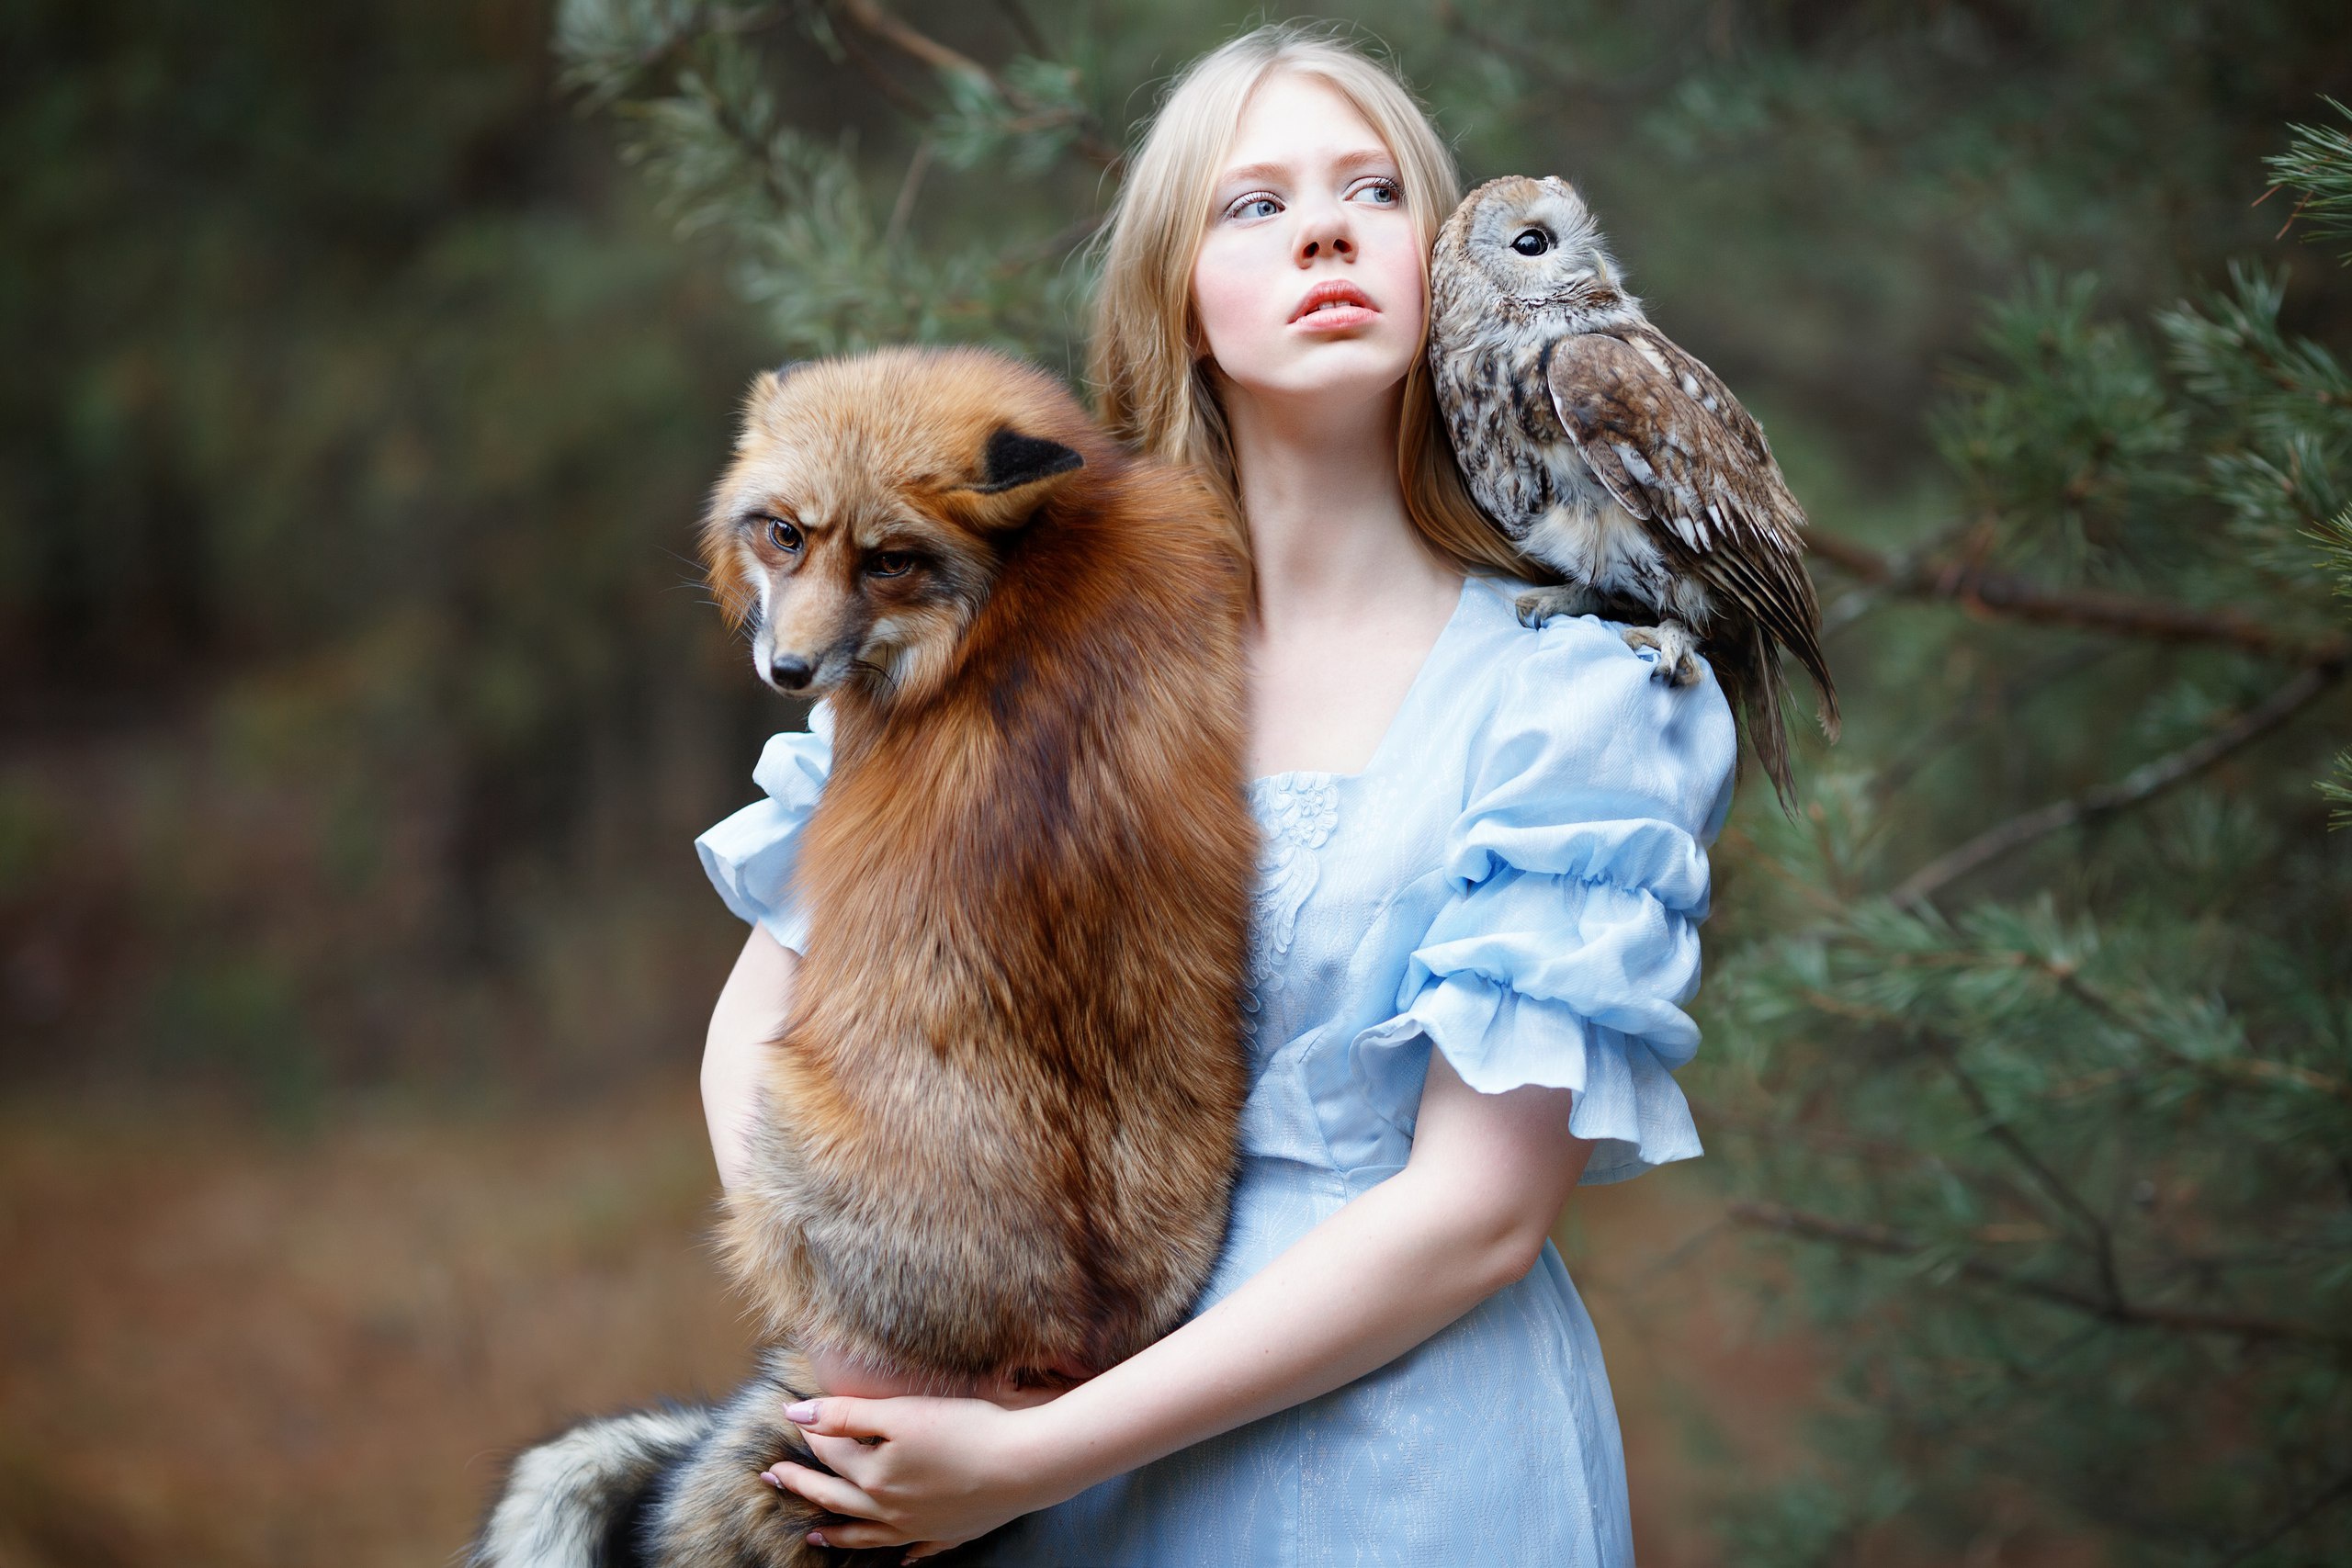 Woman with animals. Фотосессия с животными. Девушка с совой. Красивые фотосессии с животными.